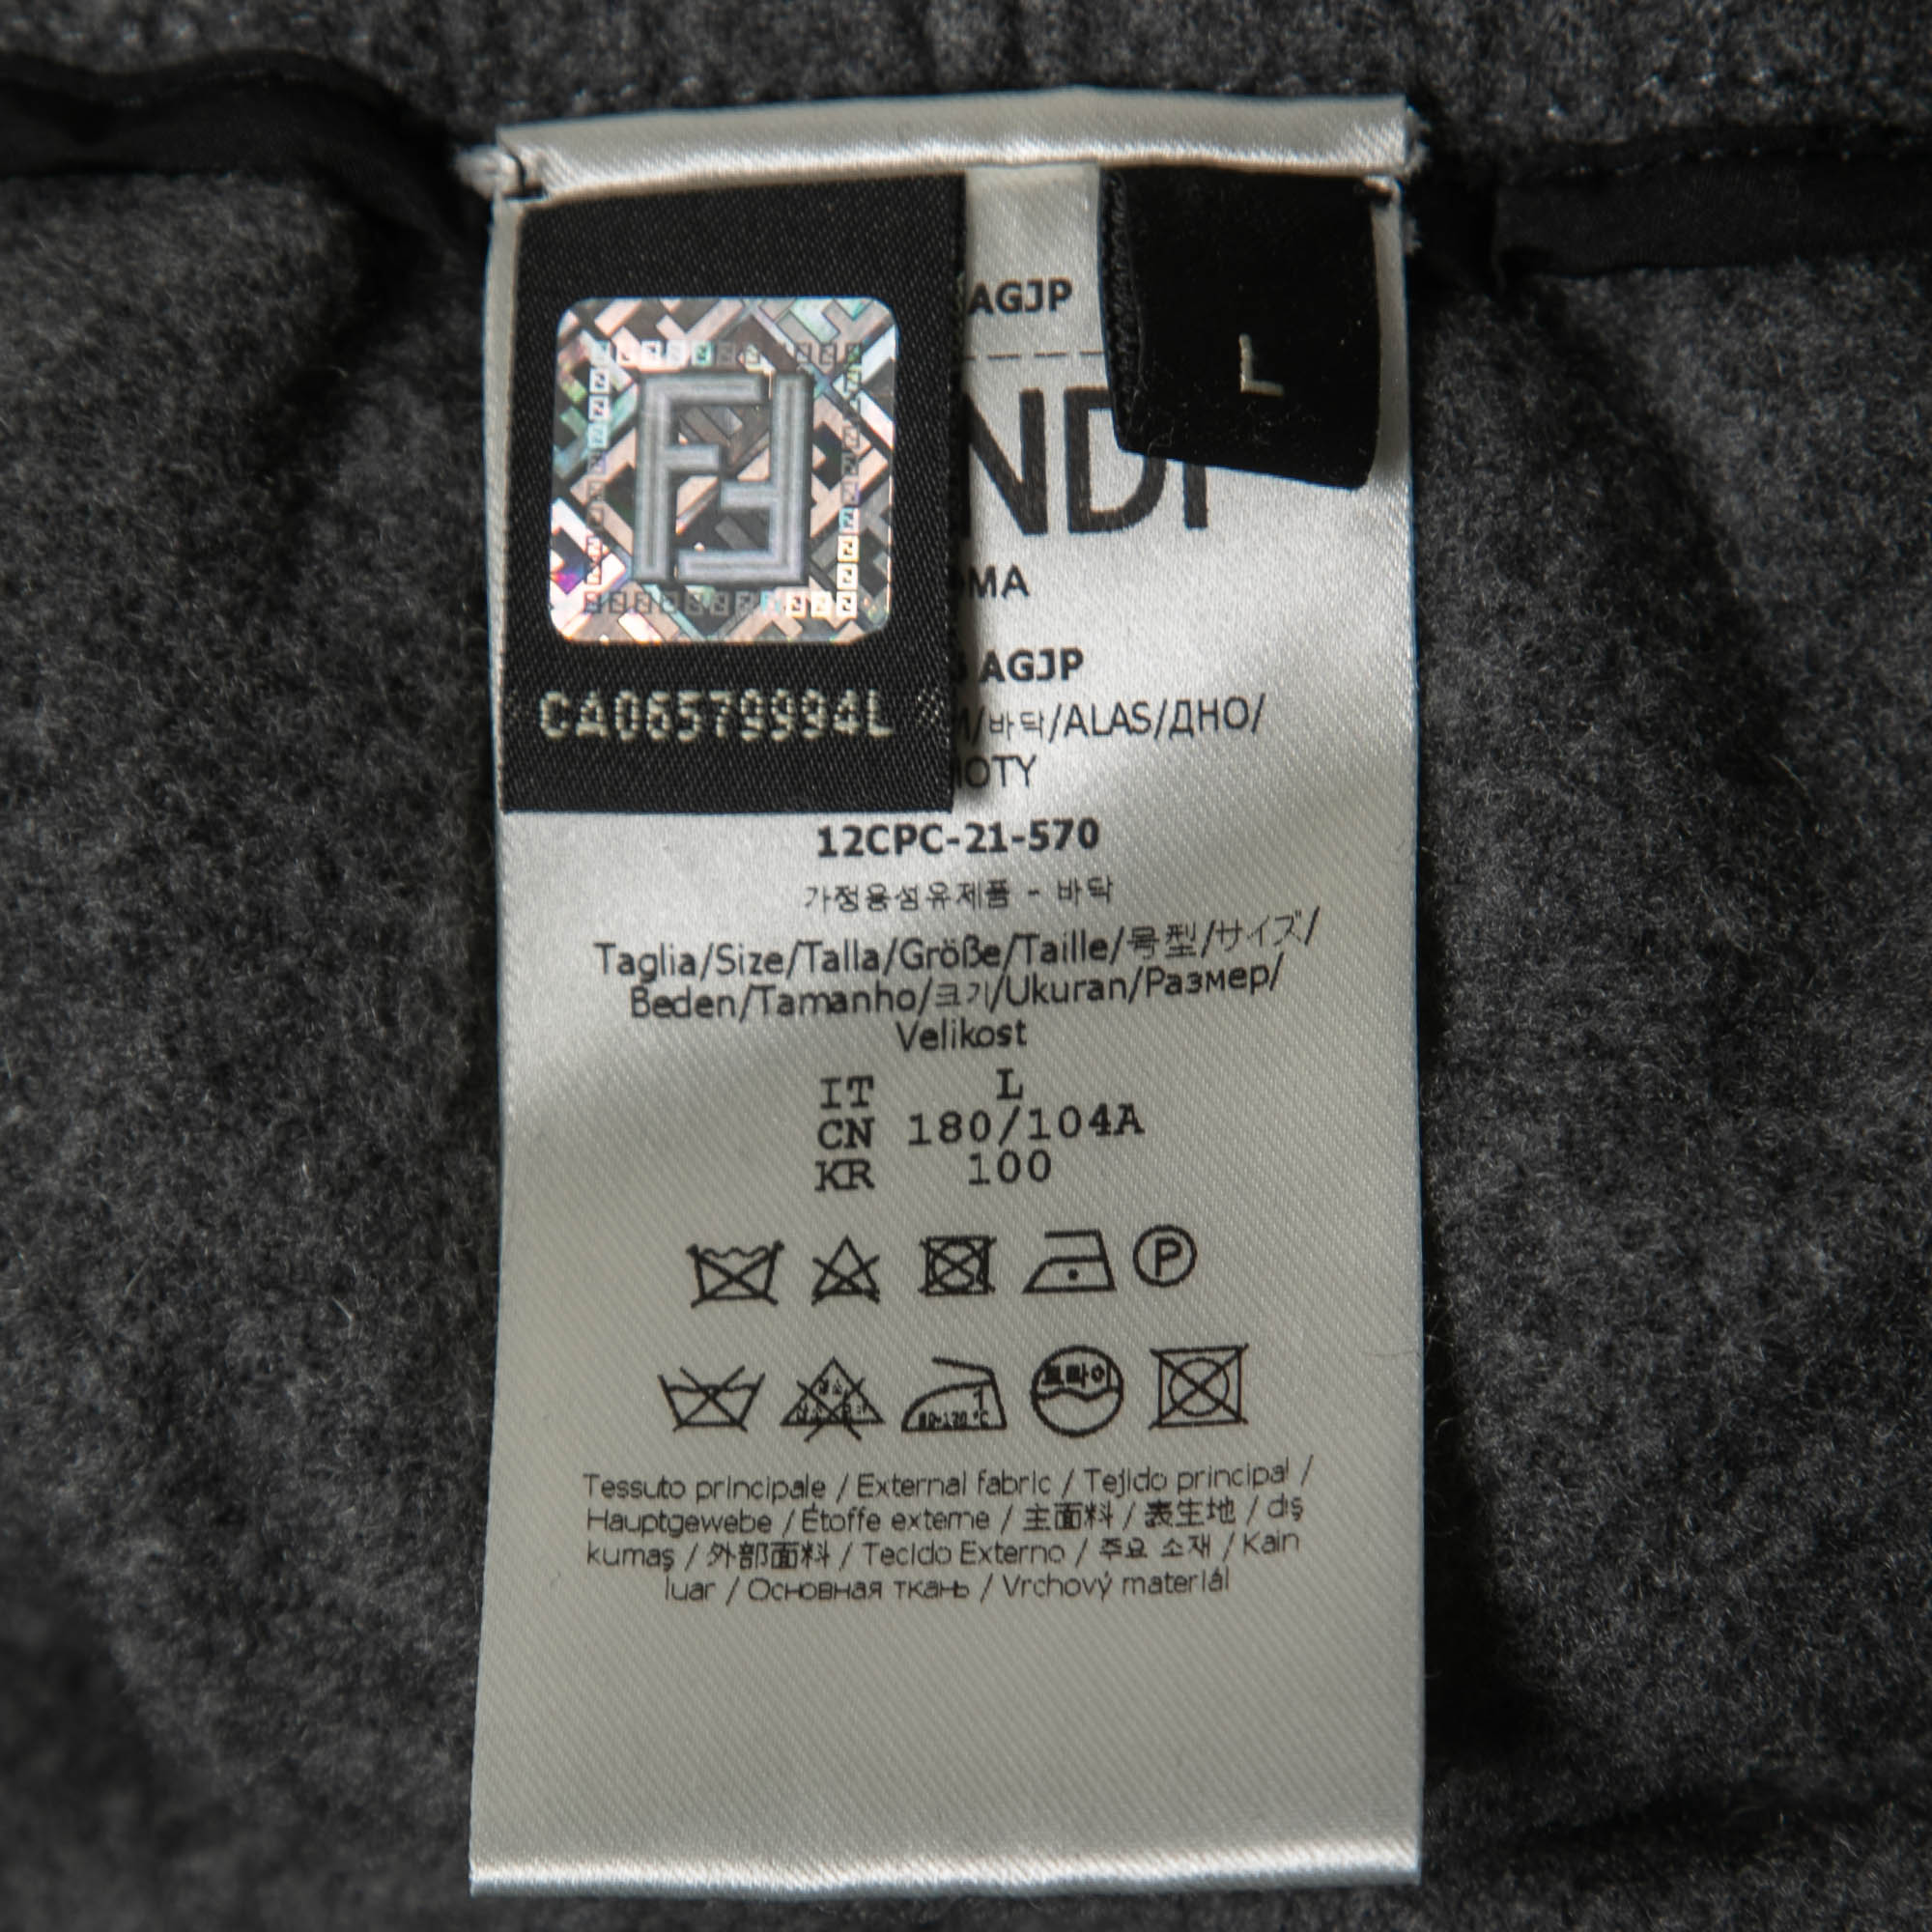 Fendi Grey Cashmere Blend Logo Strip Detail Pants L